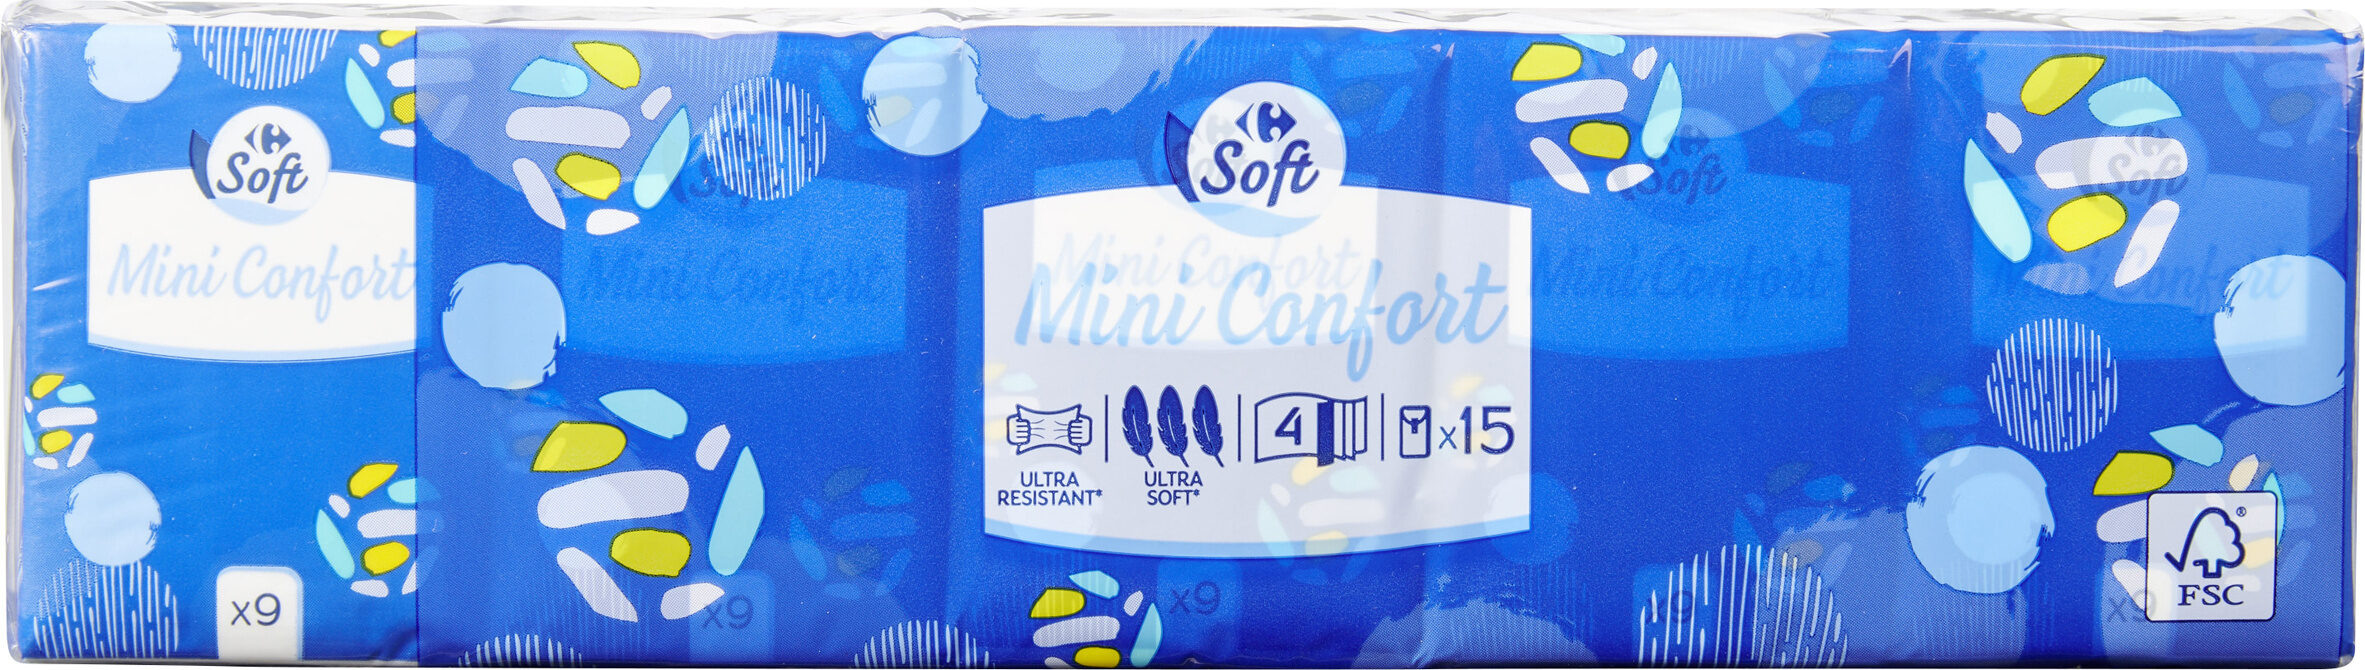 mini confort - Tuote - fr